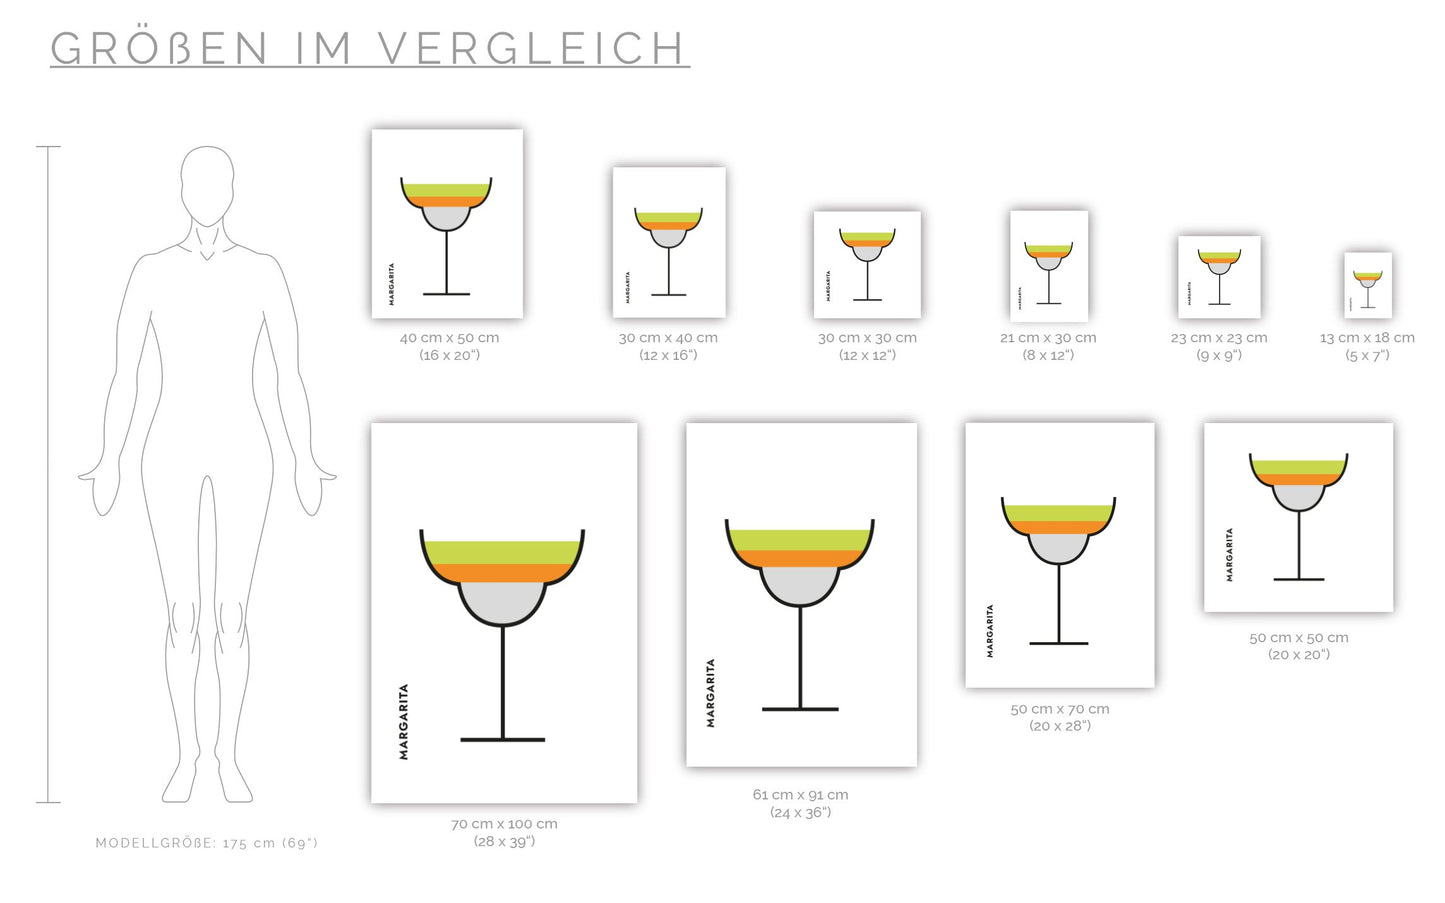 Poster Margarita im Glas (Bauhaus-Style)